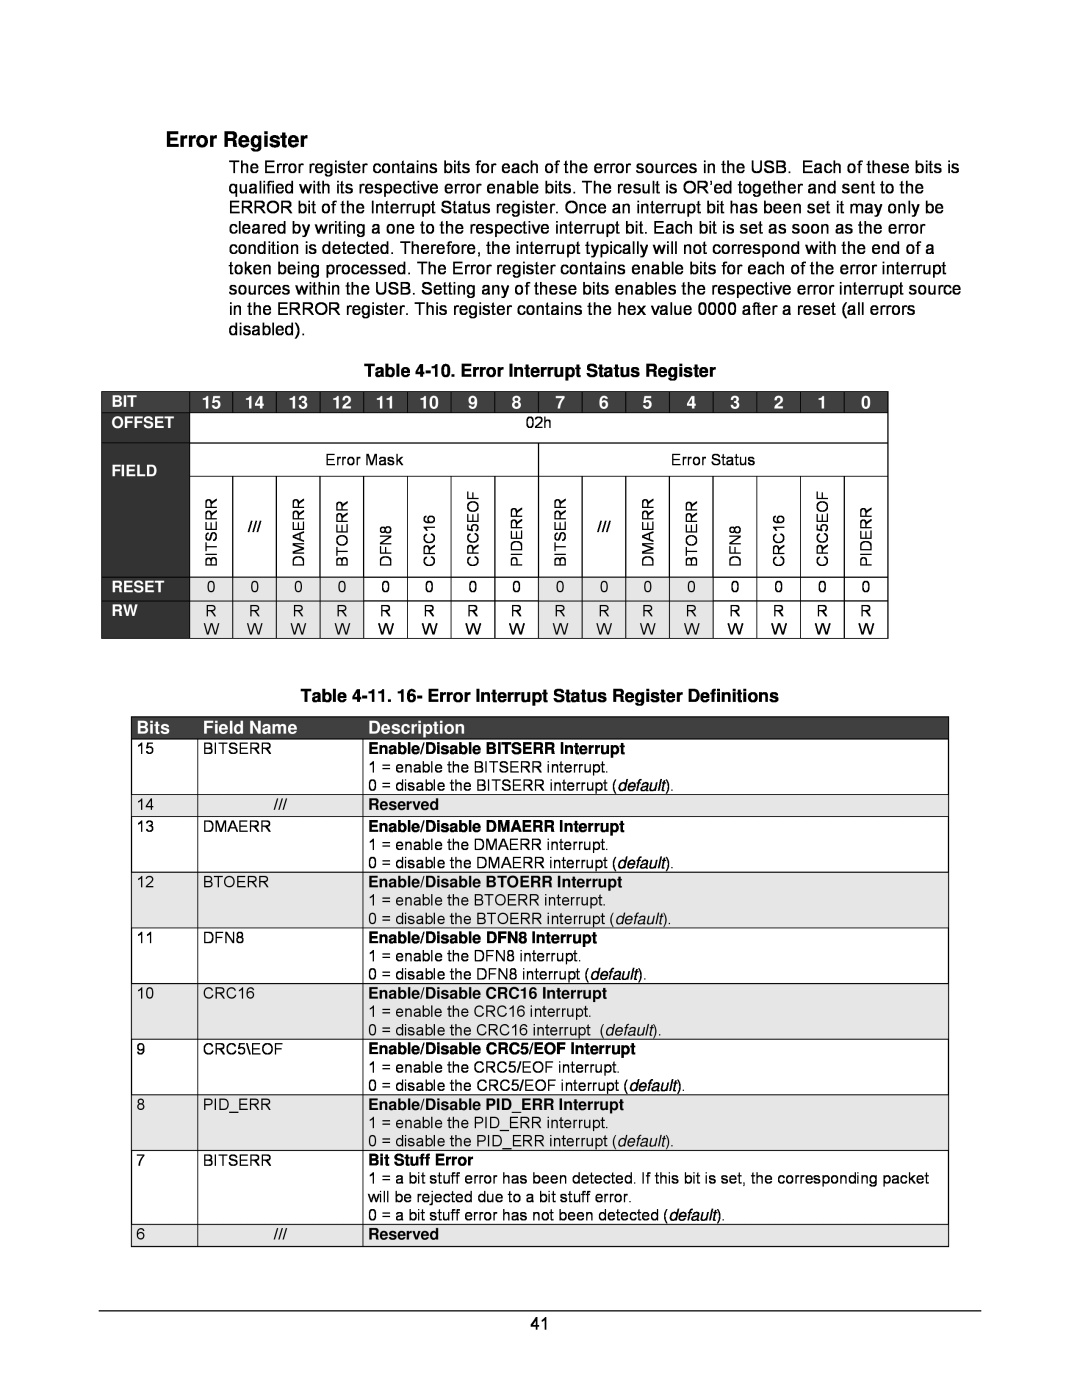 Lantronix DSTni-EX manual Error Register, 10. Error Interrupt Status Register 